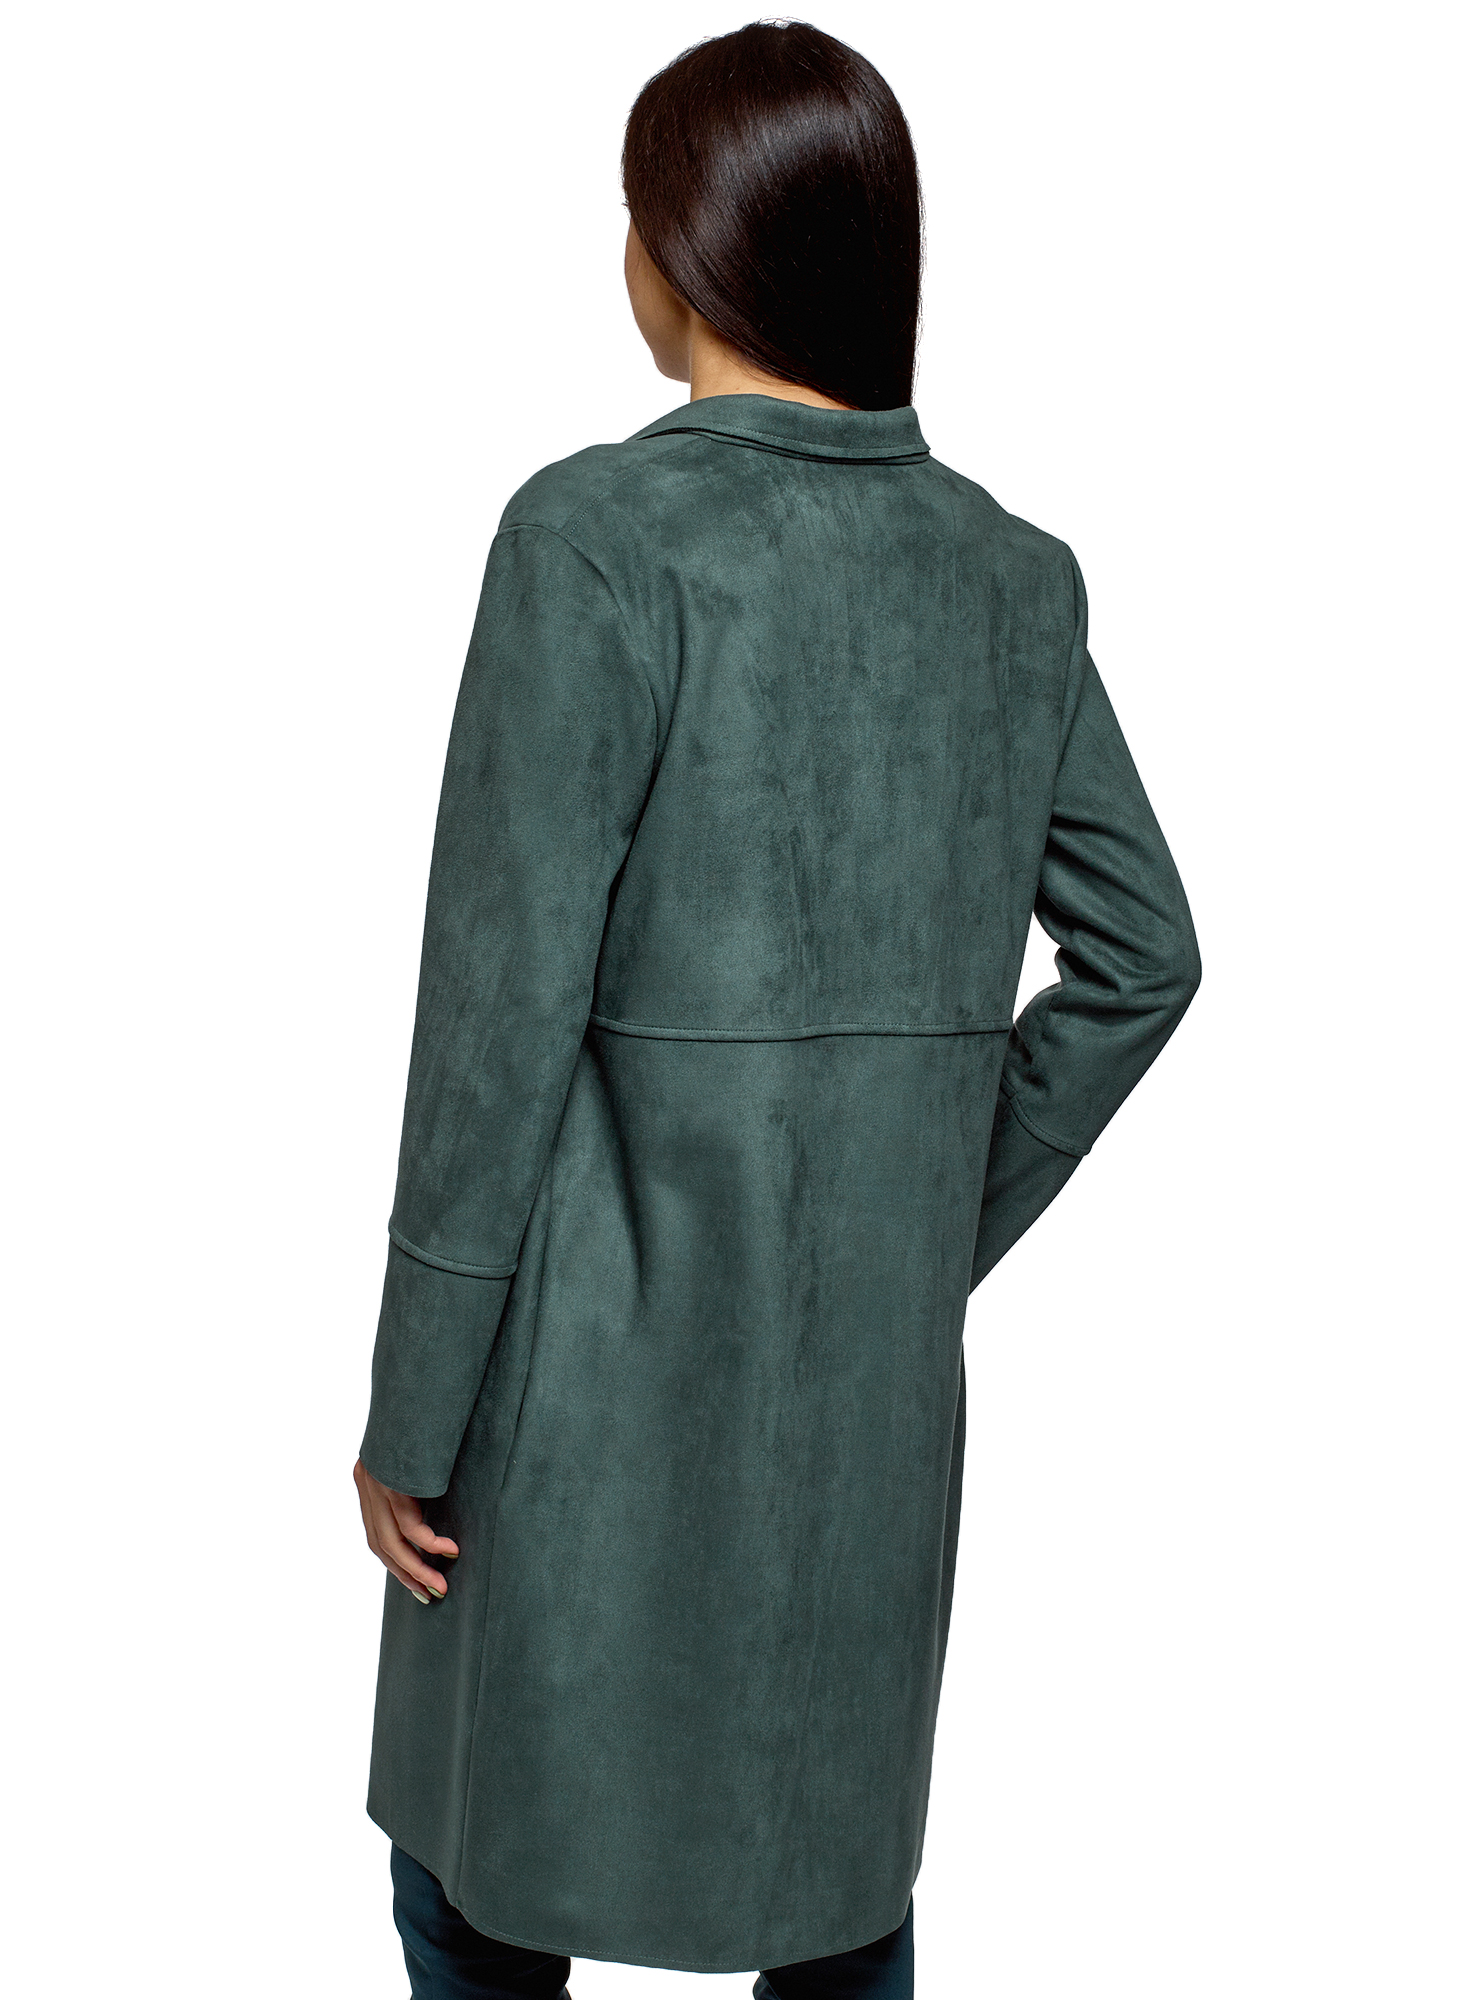 Пальто женское oodji 18R03004 зеленое 40 EU